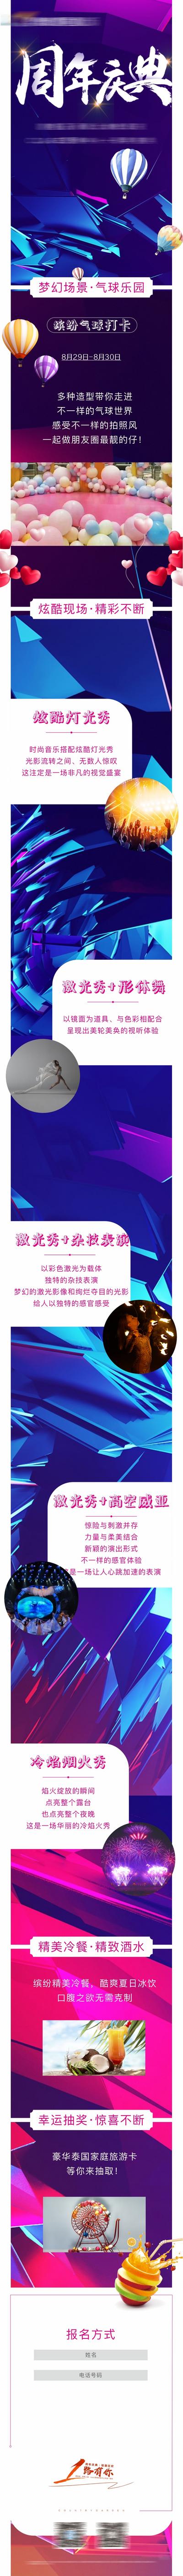 南门网 海报  长图  周年庆典 活动  双十一 双十二 气球 天猫 酷炫 